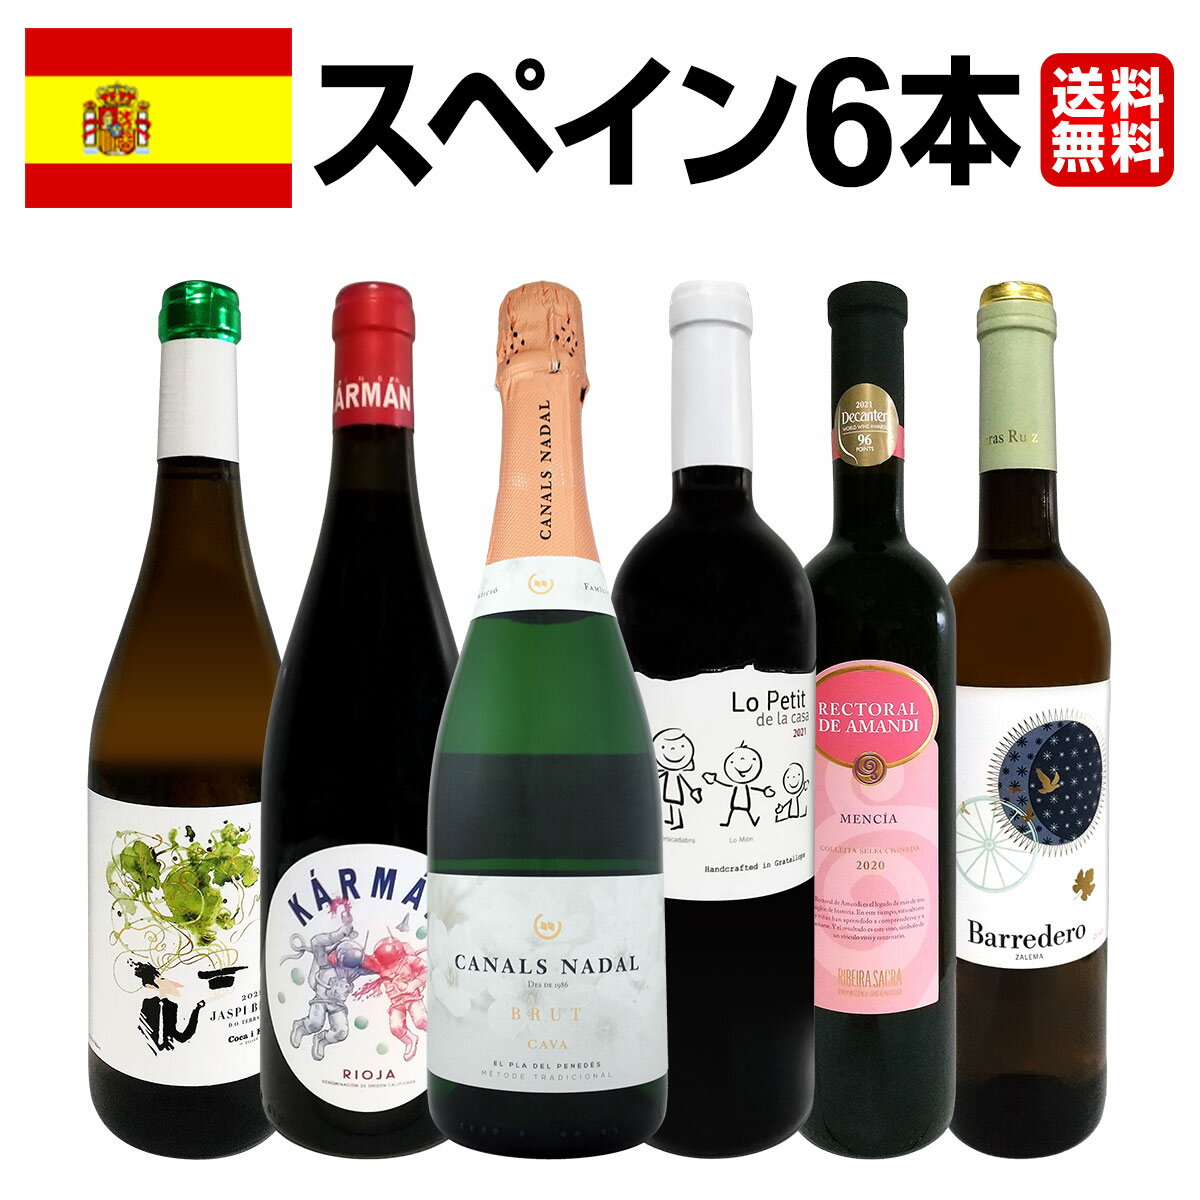 【送料無料】華麗なる新時代スペインワインセット!!